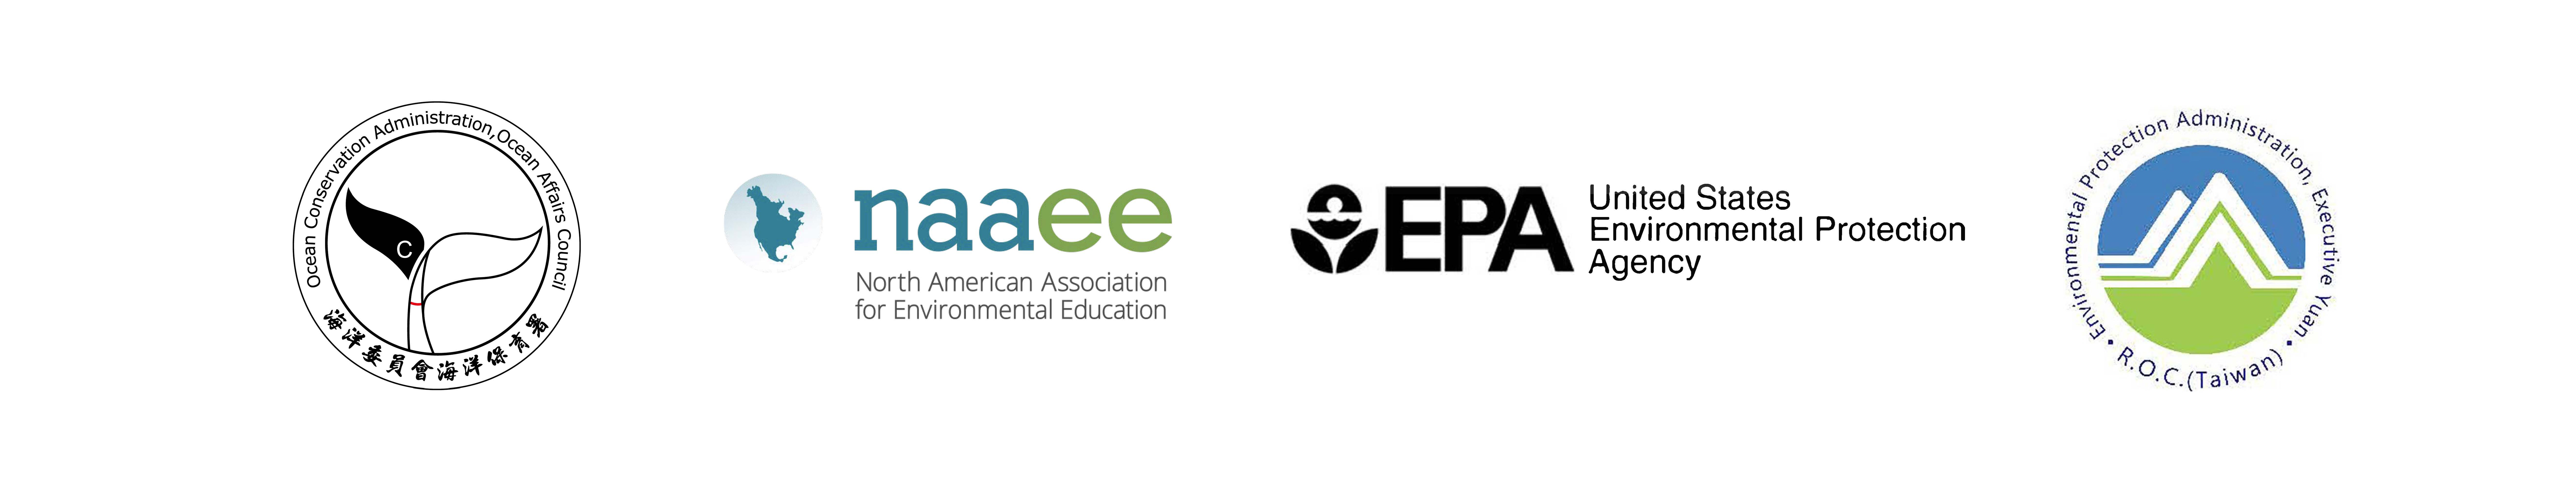 OCA, NAAEE, US EPA, and EPA Taiwan logos